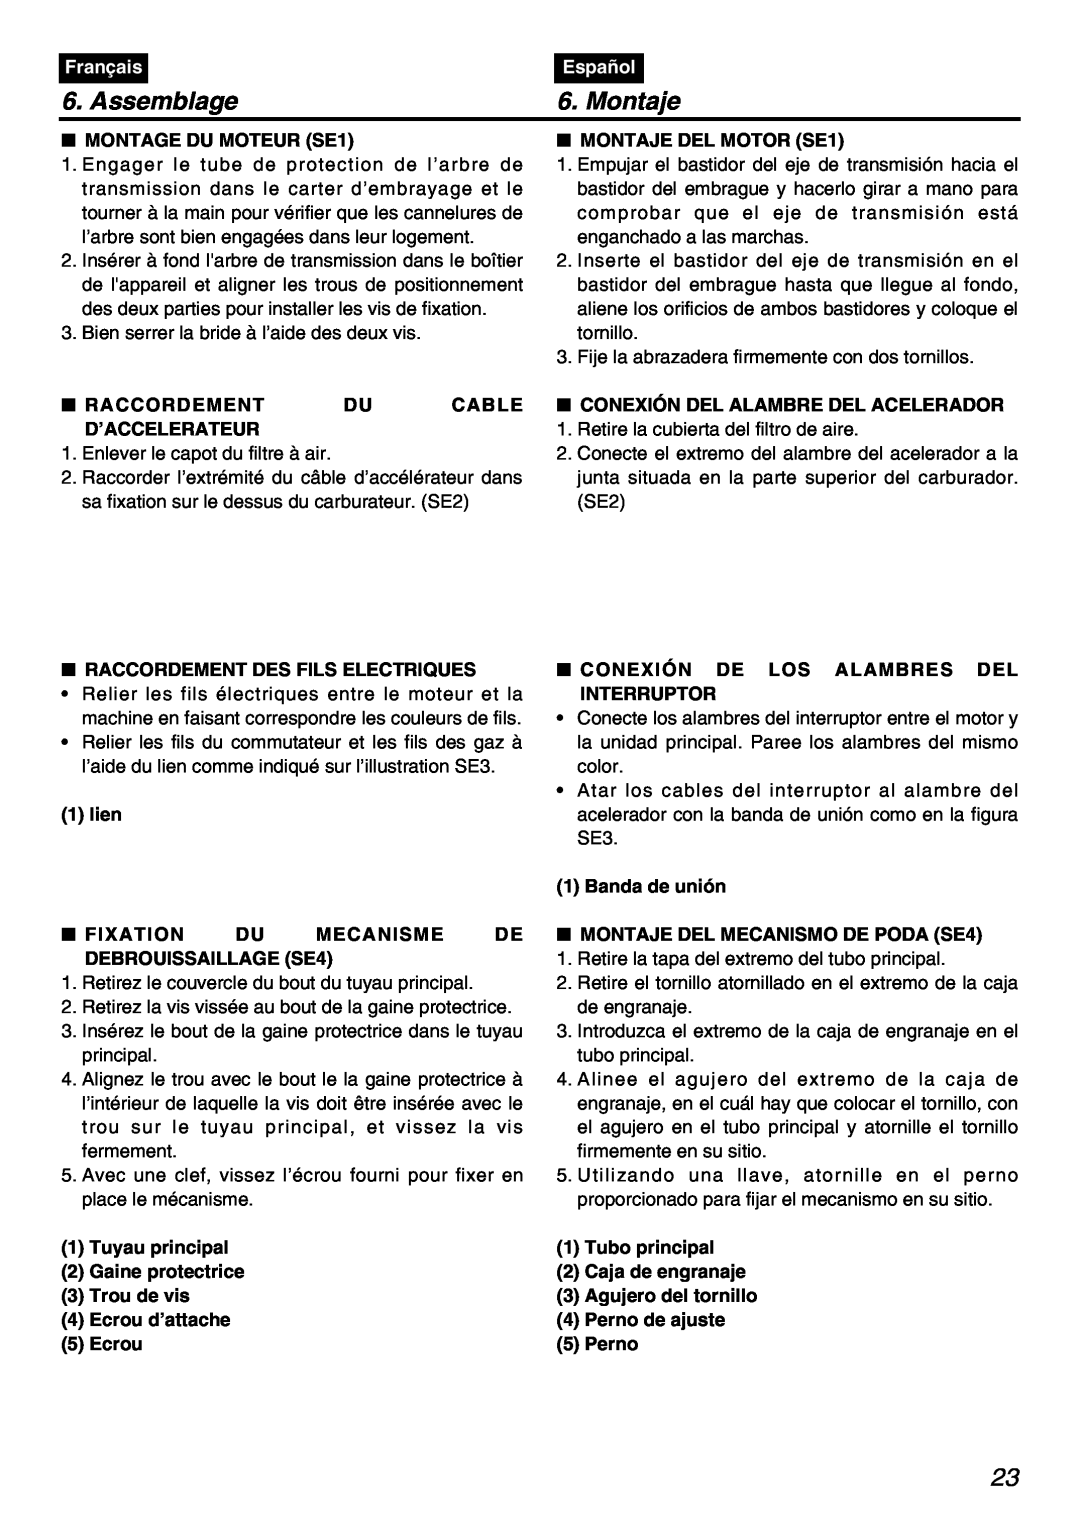 Zenoah PSZ2401 manual Assemblage, Montaje, MONTAGE DU MOTEUR SE1, MONTAJE DEL MOTOR SE1, Français, Español 